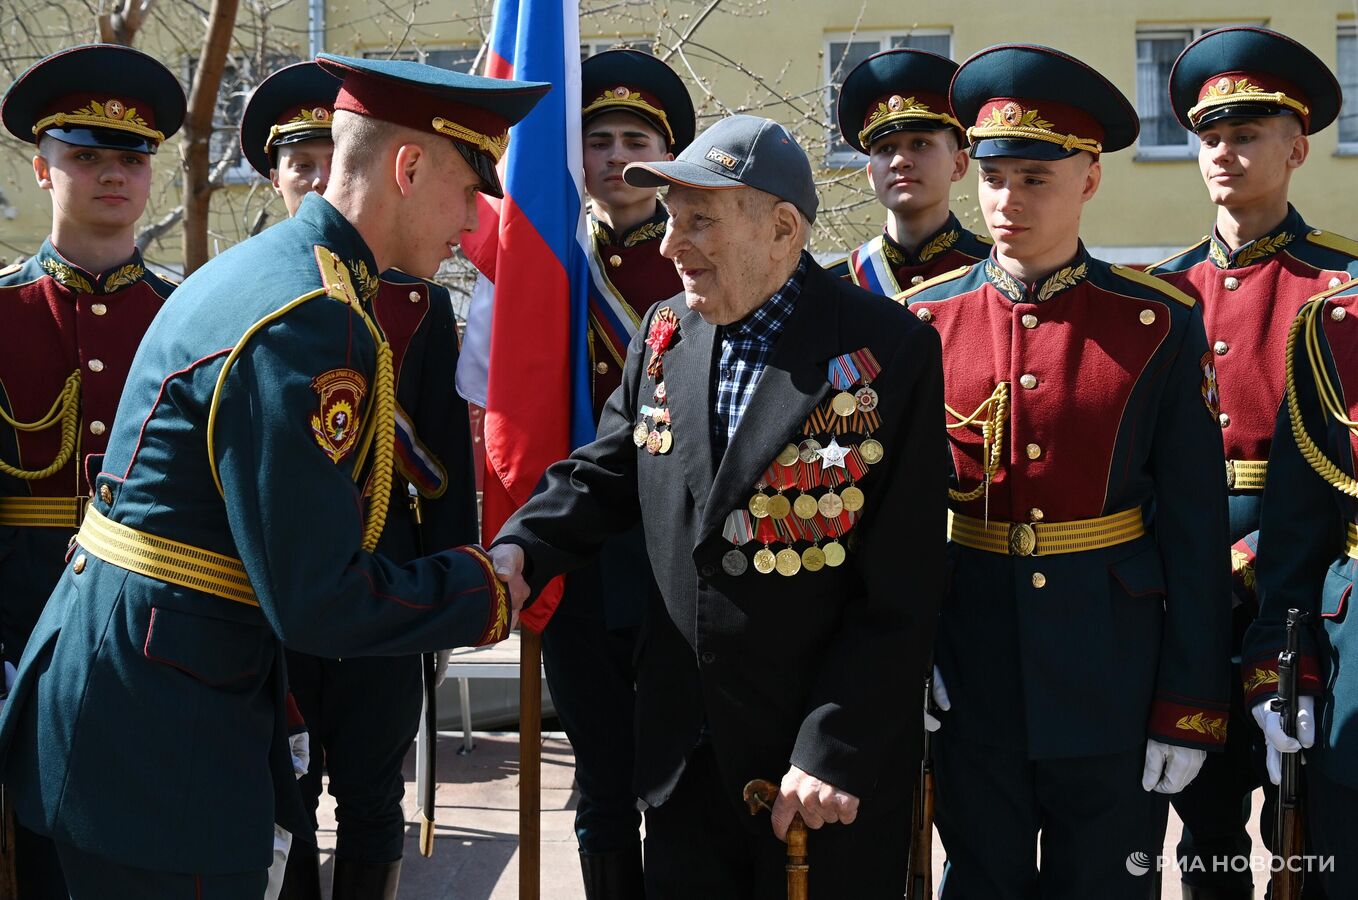 Сточетырехлетний ветеран поздравил участников спецоперации с Днем Победы